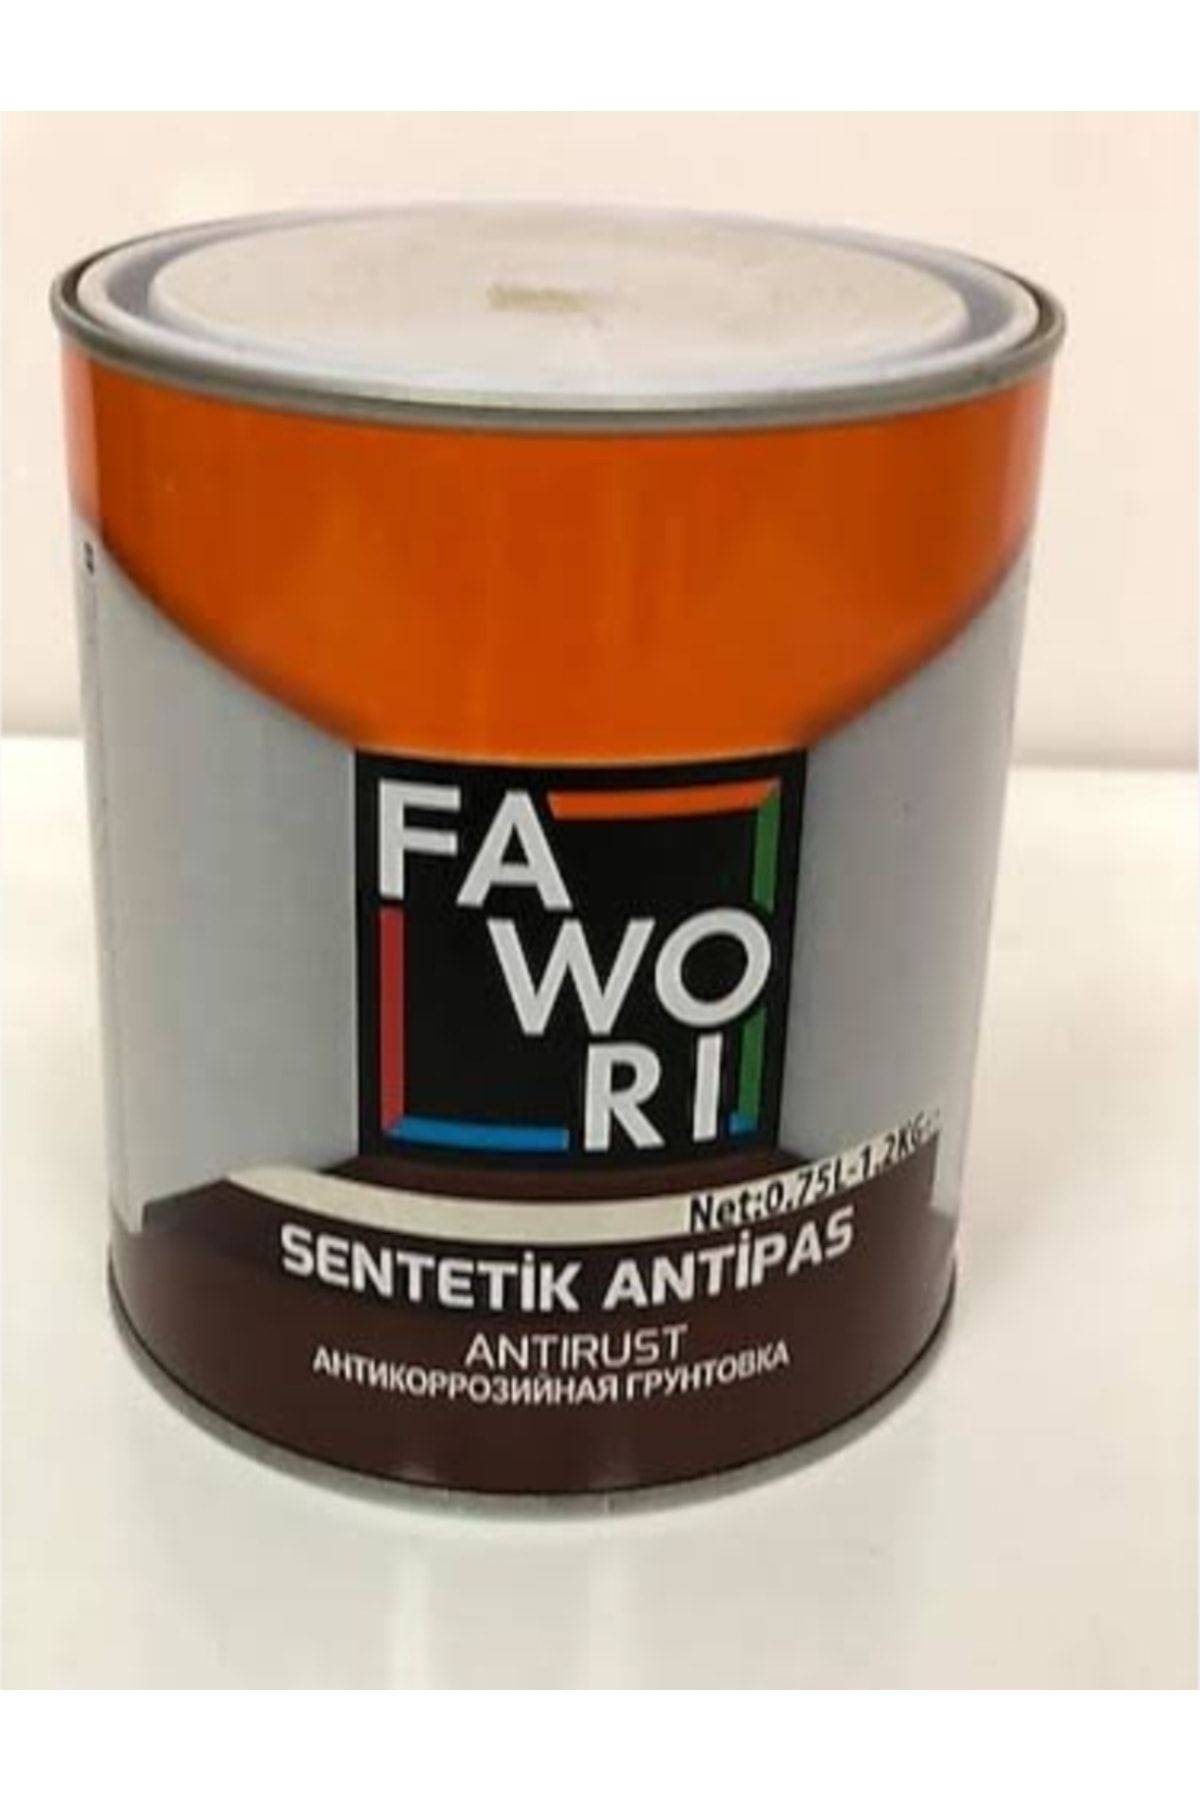 Fawori Sentetik Antipas Boya - Kırmızı 2.5 Lt